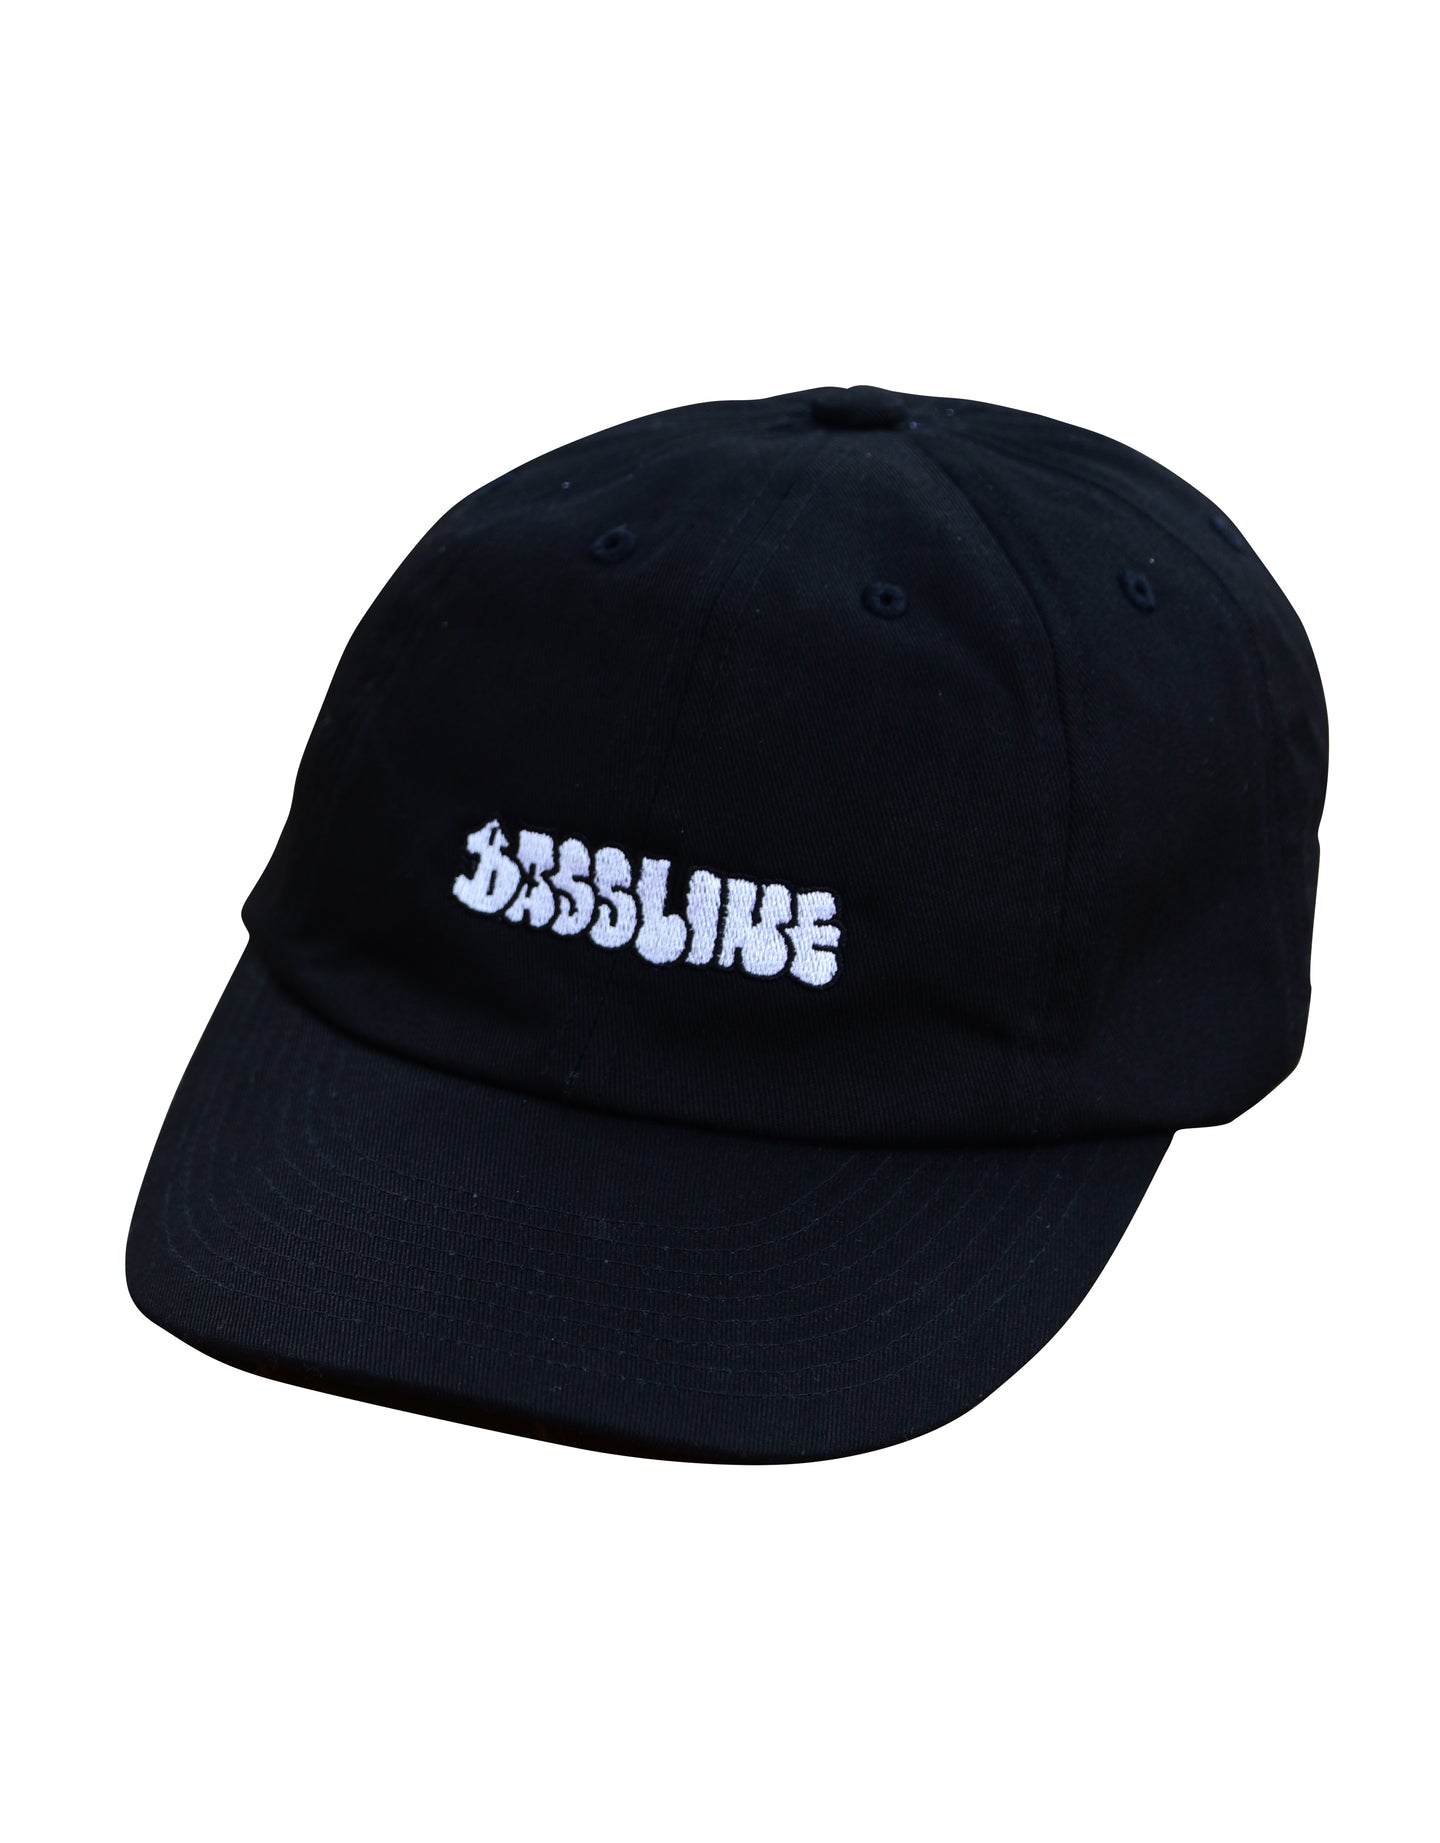 NEMES x BASSLINE CAP